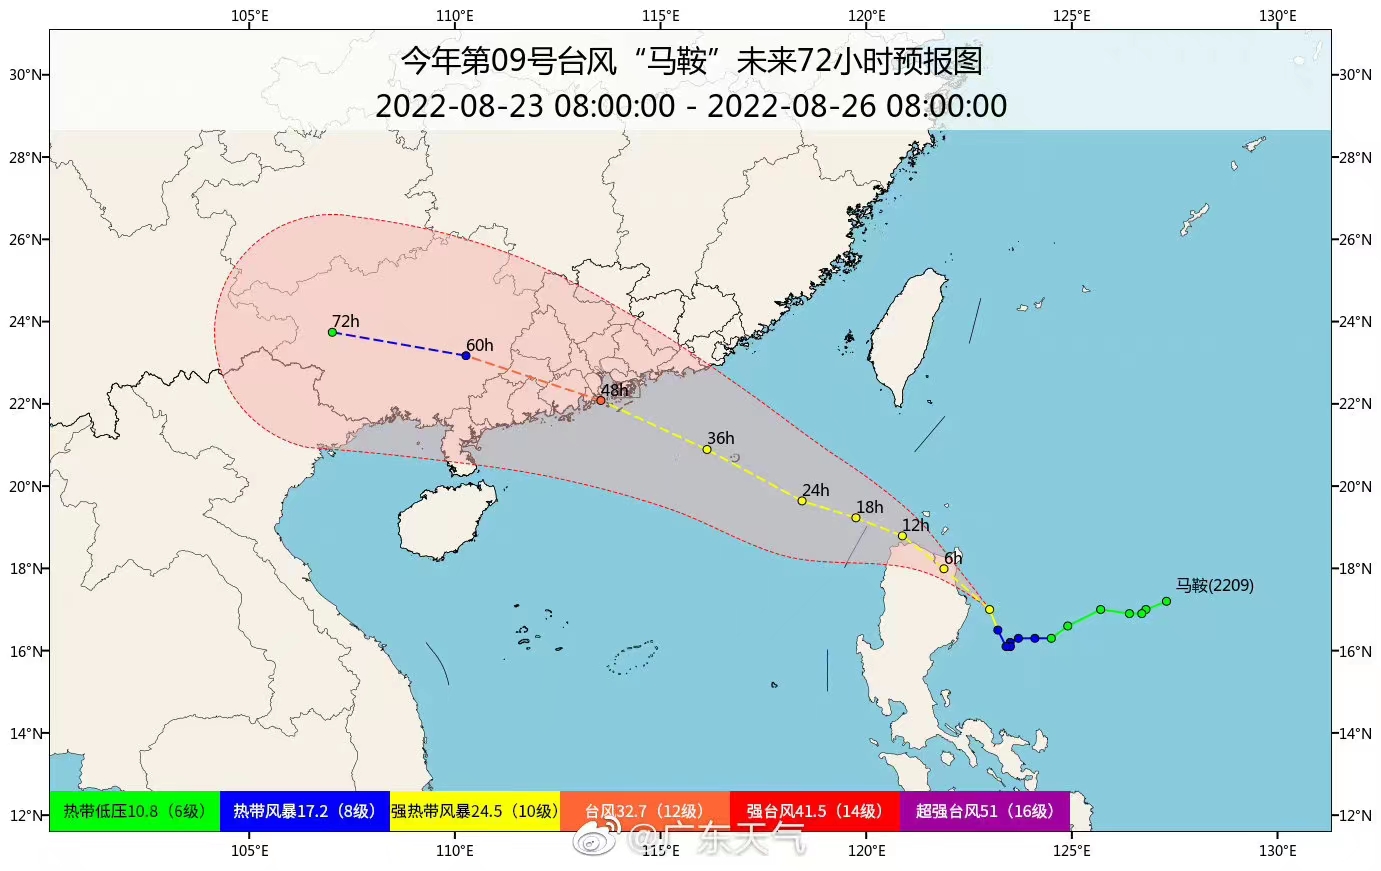 颱風「馬鞍」正襲廣東 深圳進入戒備狀態